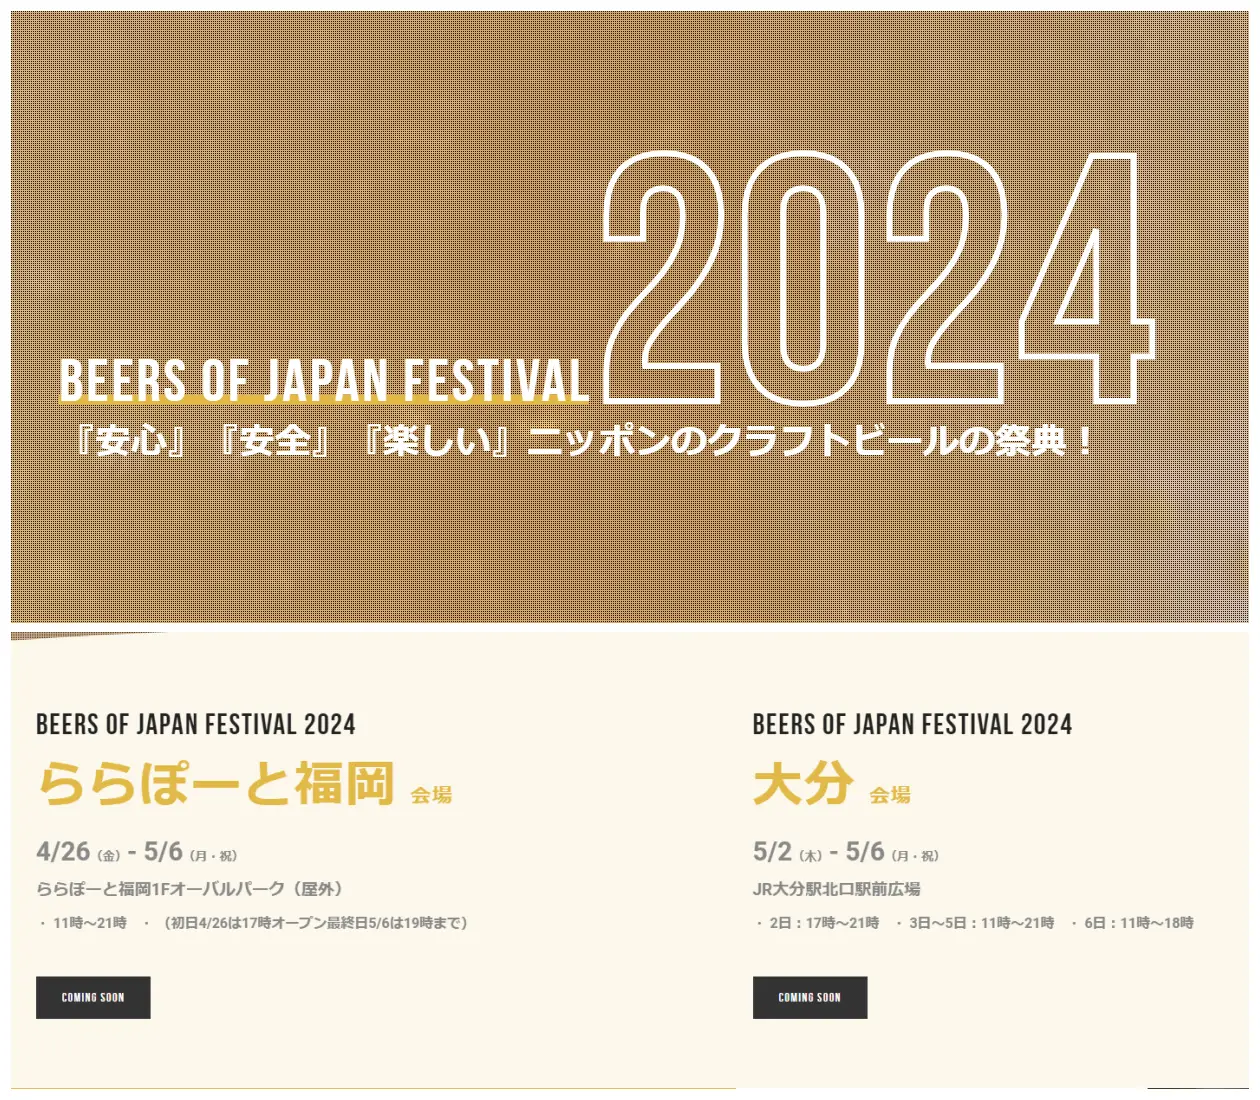 BEERS OF JAPAN FESTIVAL 2024開催情報